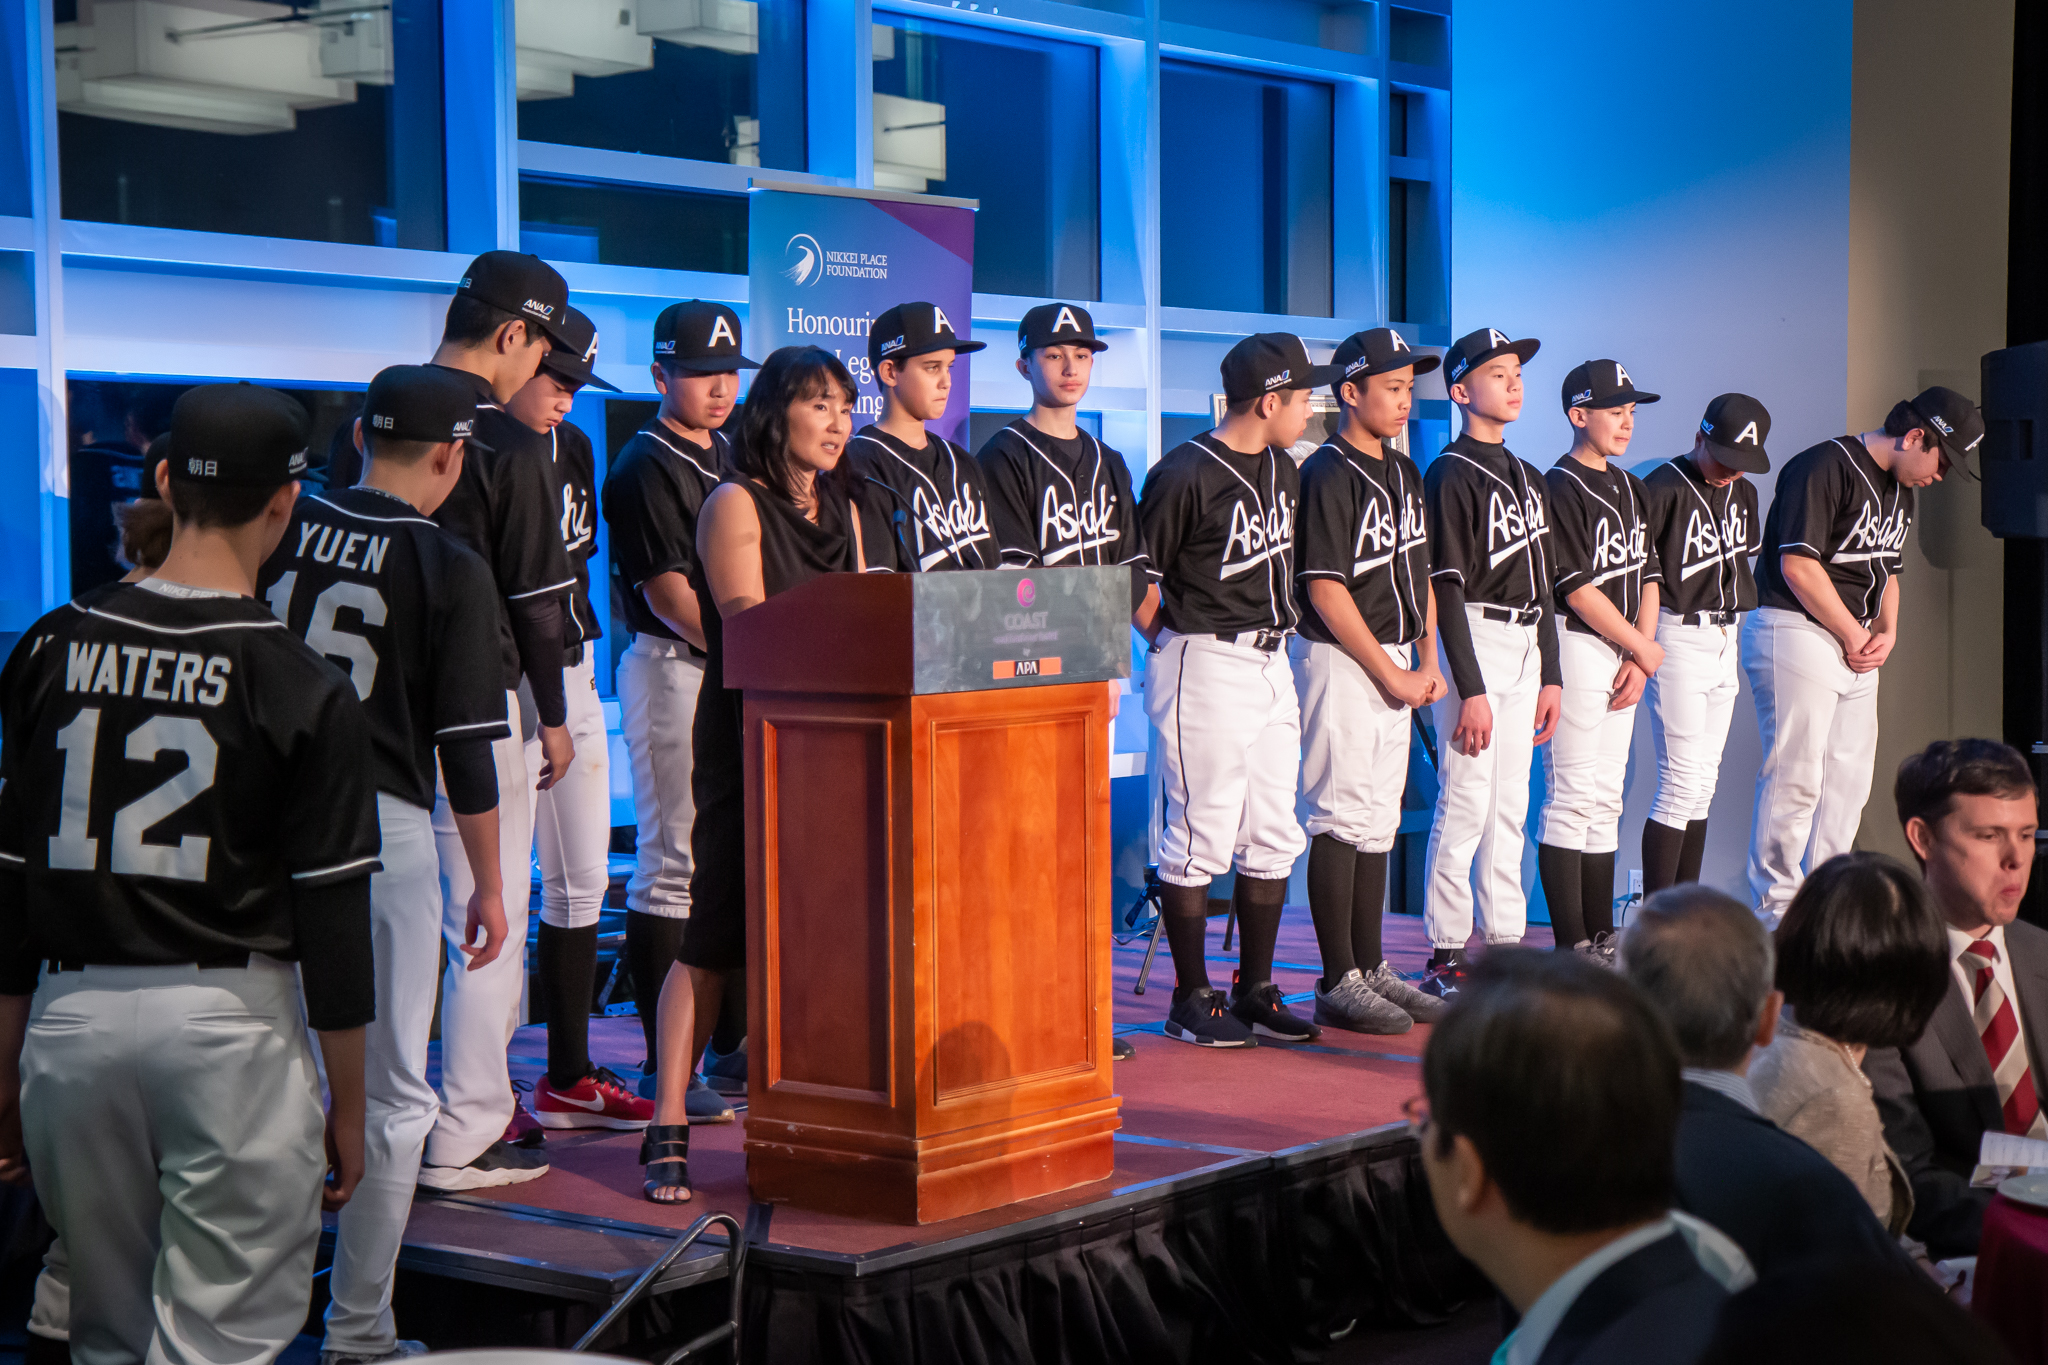  Emiko Ando of the Asahi Baseball Association accepts the Nikkei Youth Athletics Bursary on behalf of the Shin Asahi baseball team. 